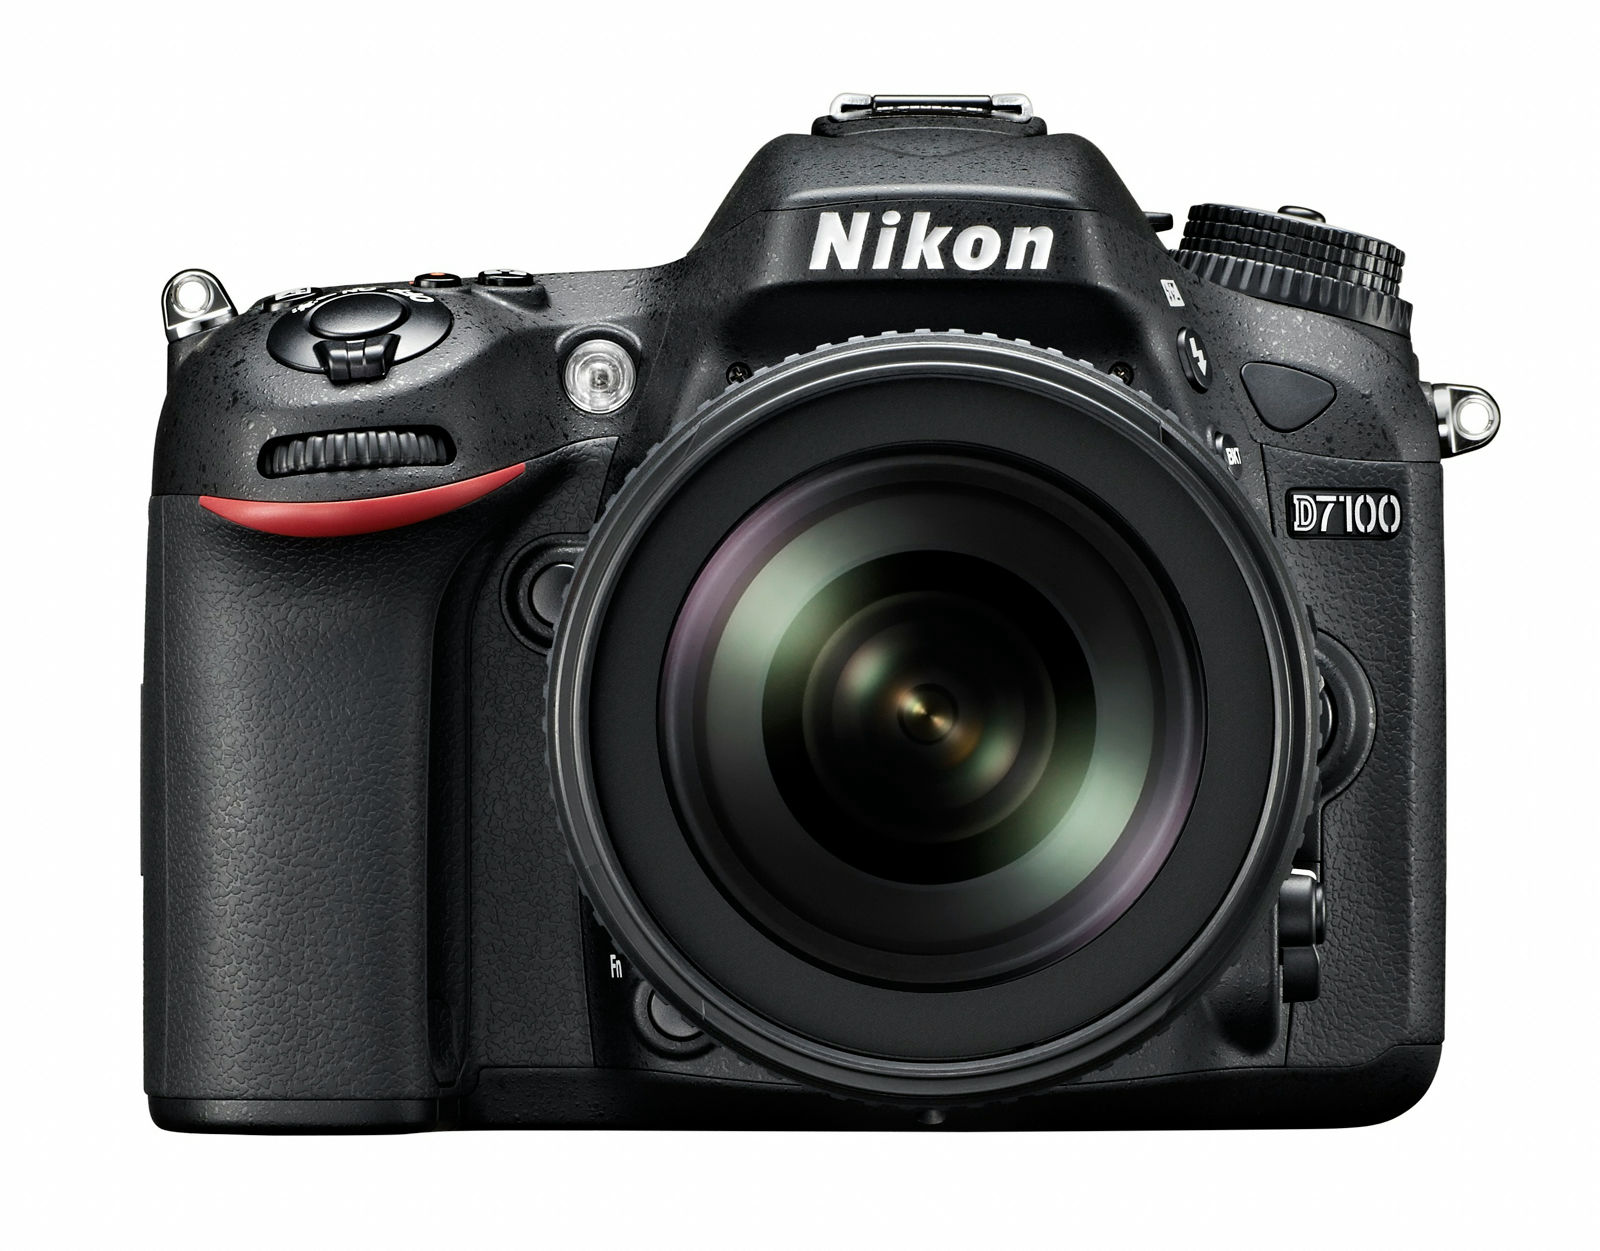 ニコンがデジタル一眼レフカメラ「D7100」を3月発売予定、13万円台から